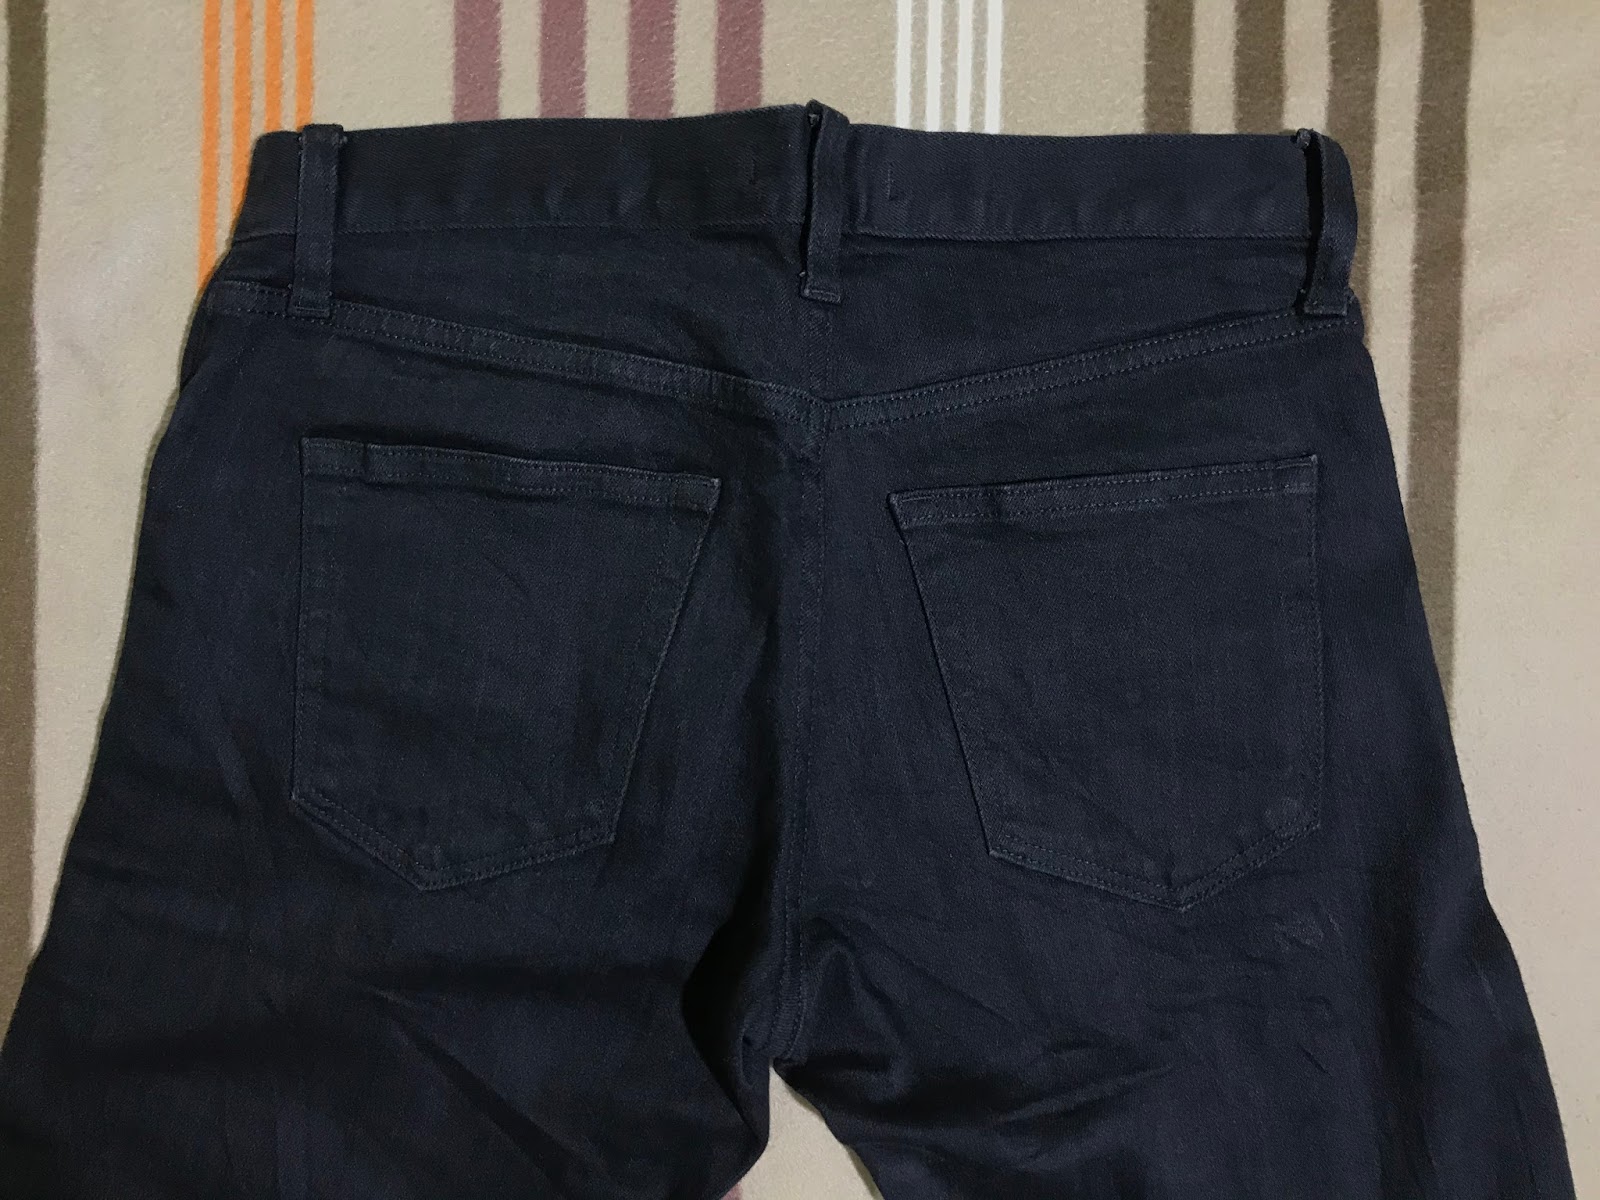 ho-B-bundle: Uniqlo jeans